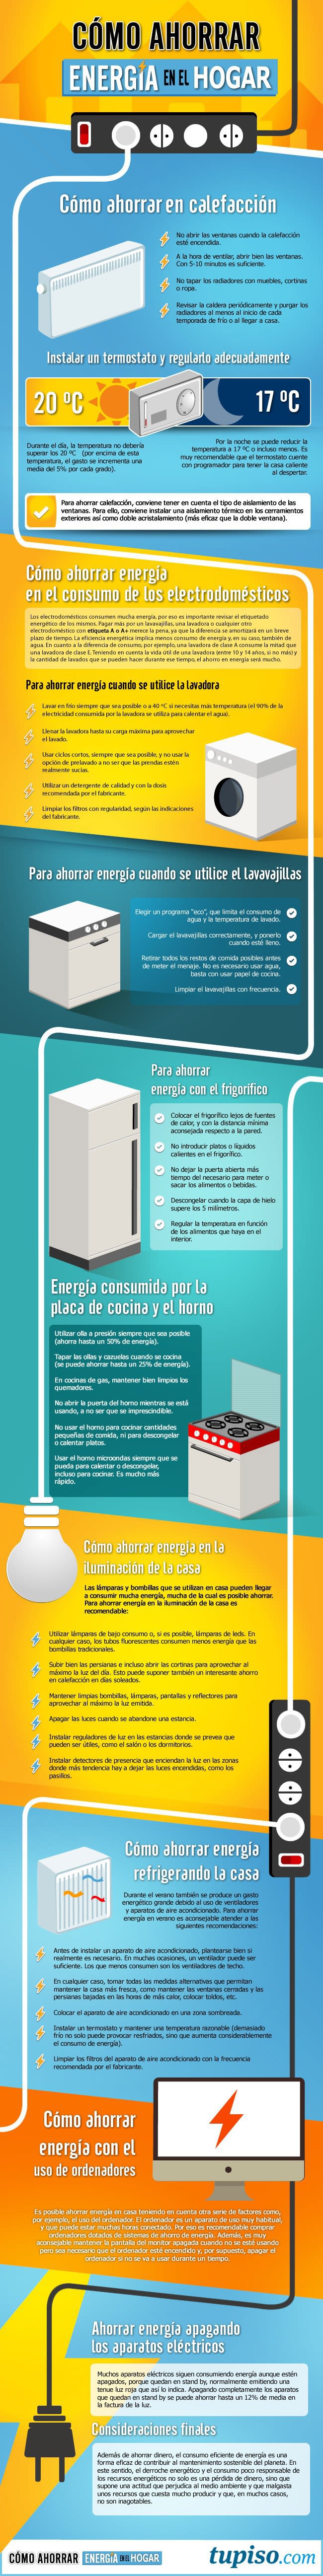 Infografia  Cómo ahorrar energía en el hogar -1